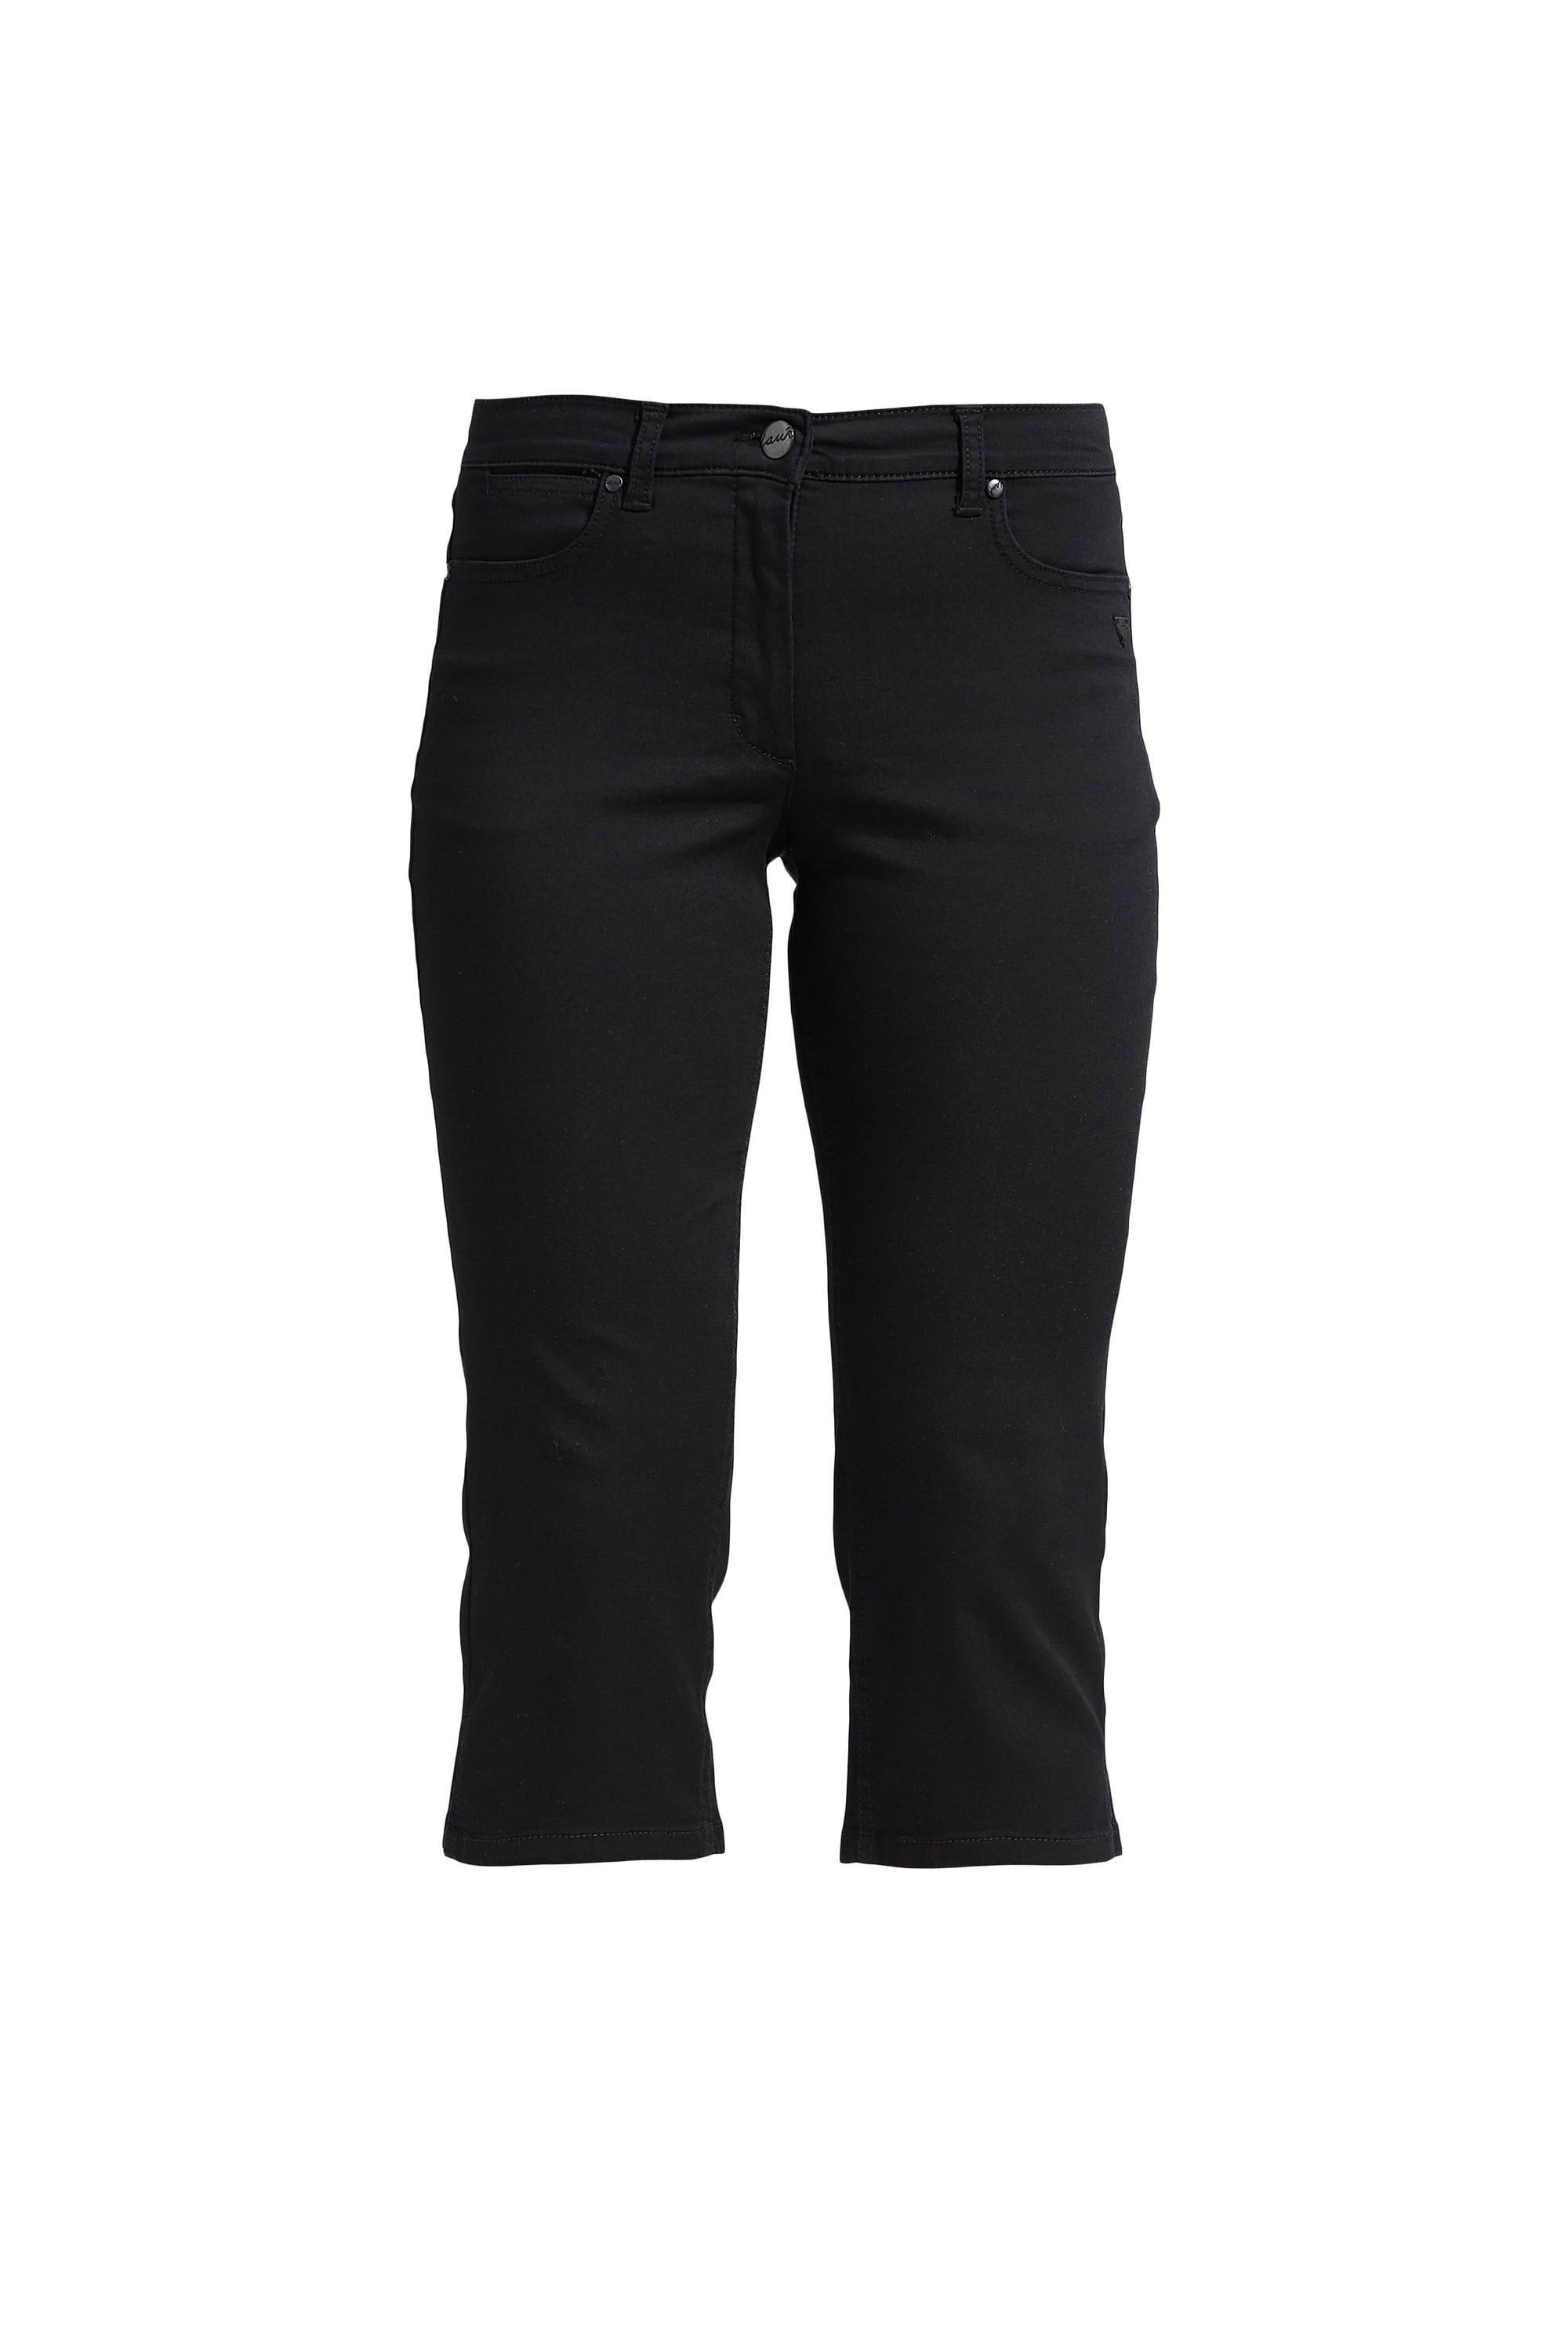 LAURIE Charlotte Regular Capri Bukser Trousers REGULAR 99100 Black